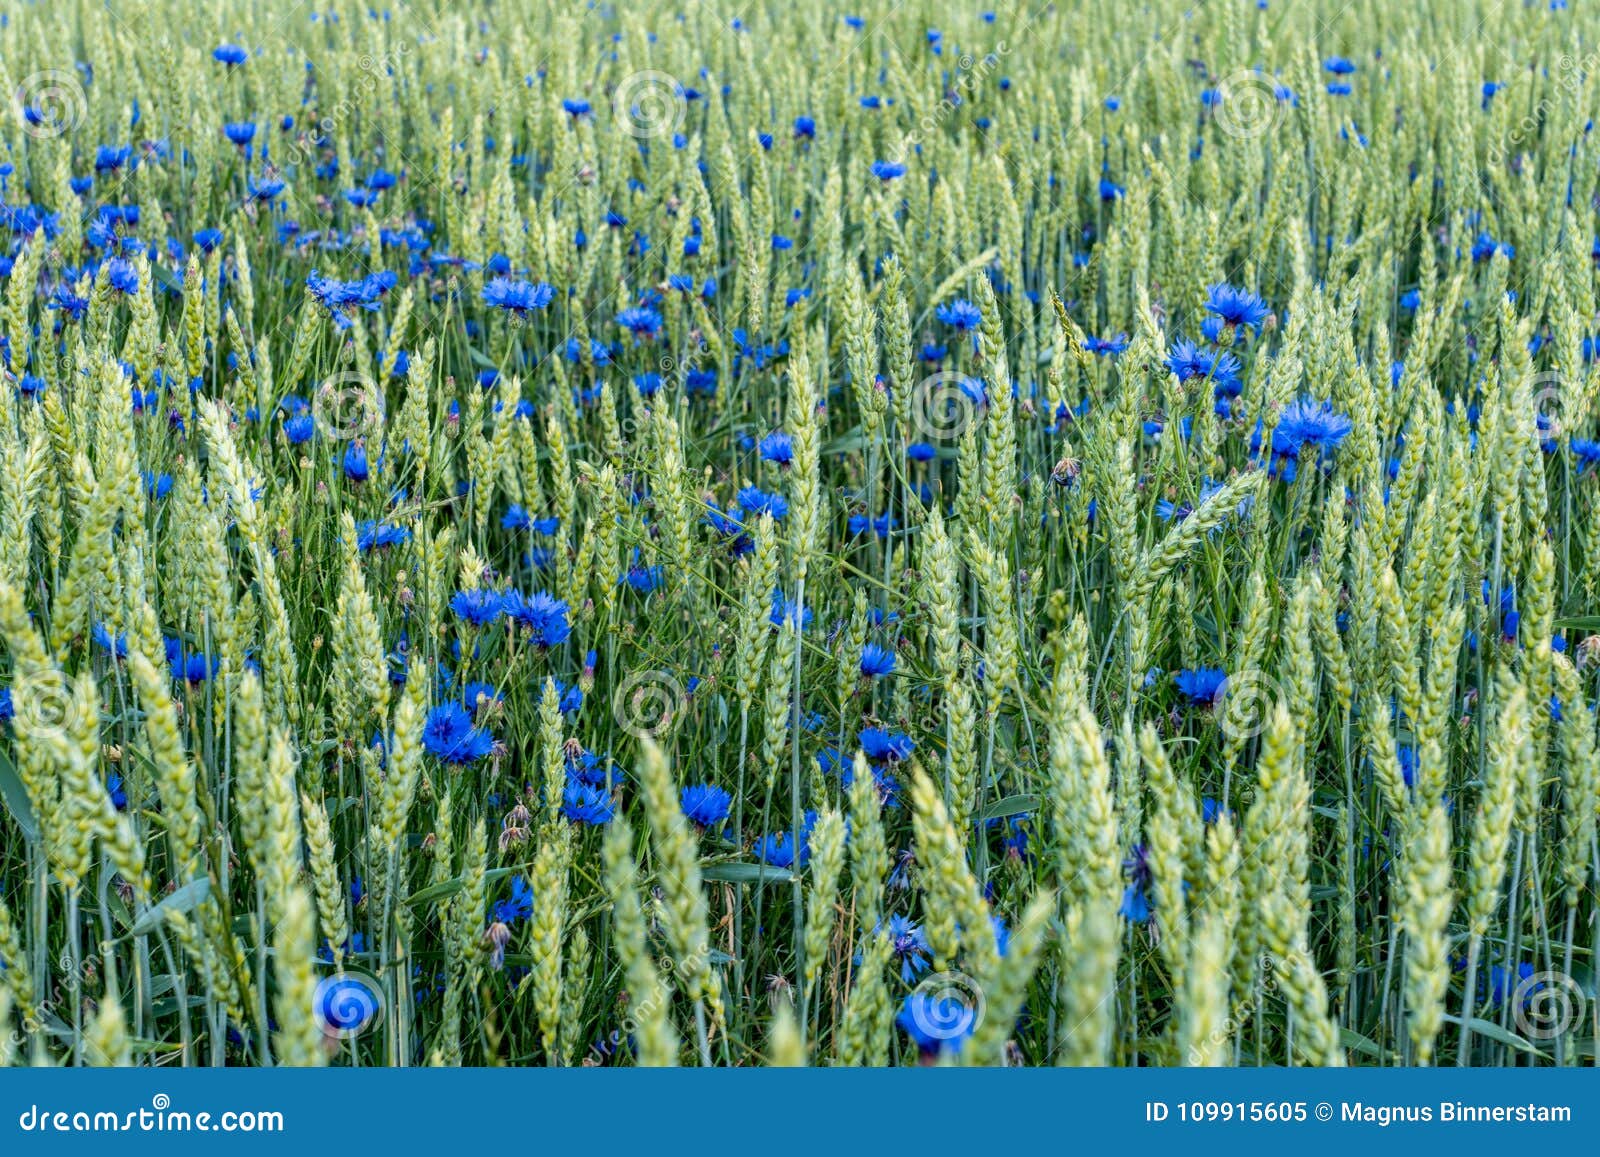 Veteåkern med blått sätter på en hätta blommor som är blandade med gröna sugrör. Det färgrika fältet av sädesslag med mycket blå hätta blommar blandat med gröna sugrör av vete